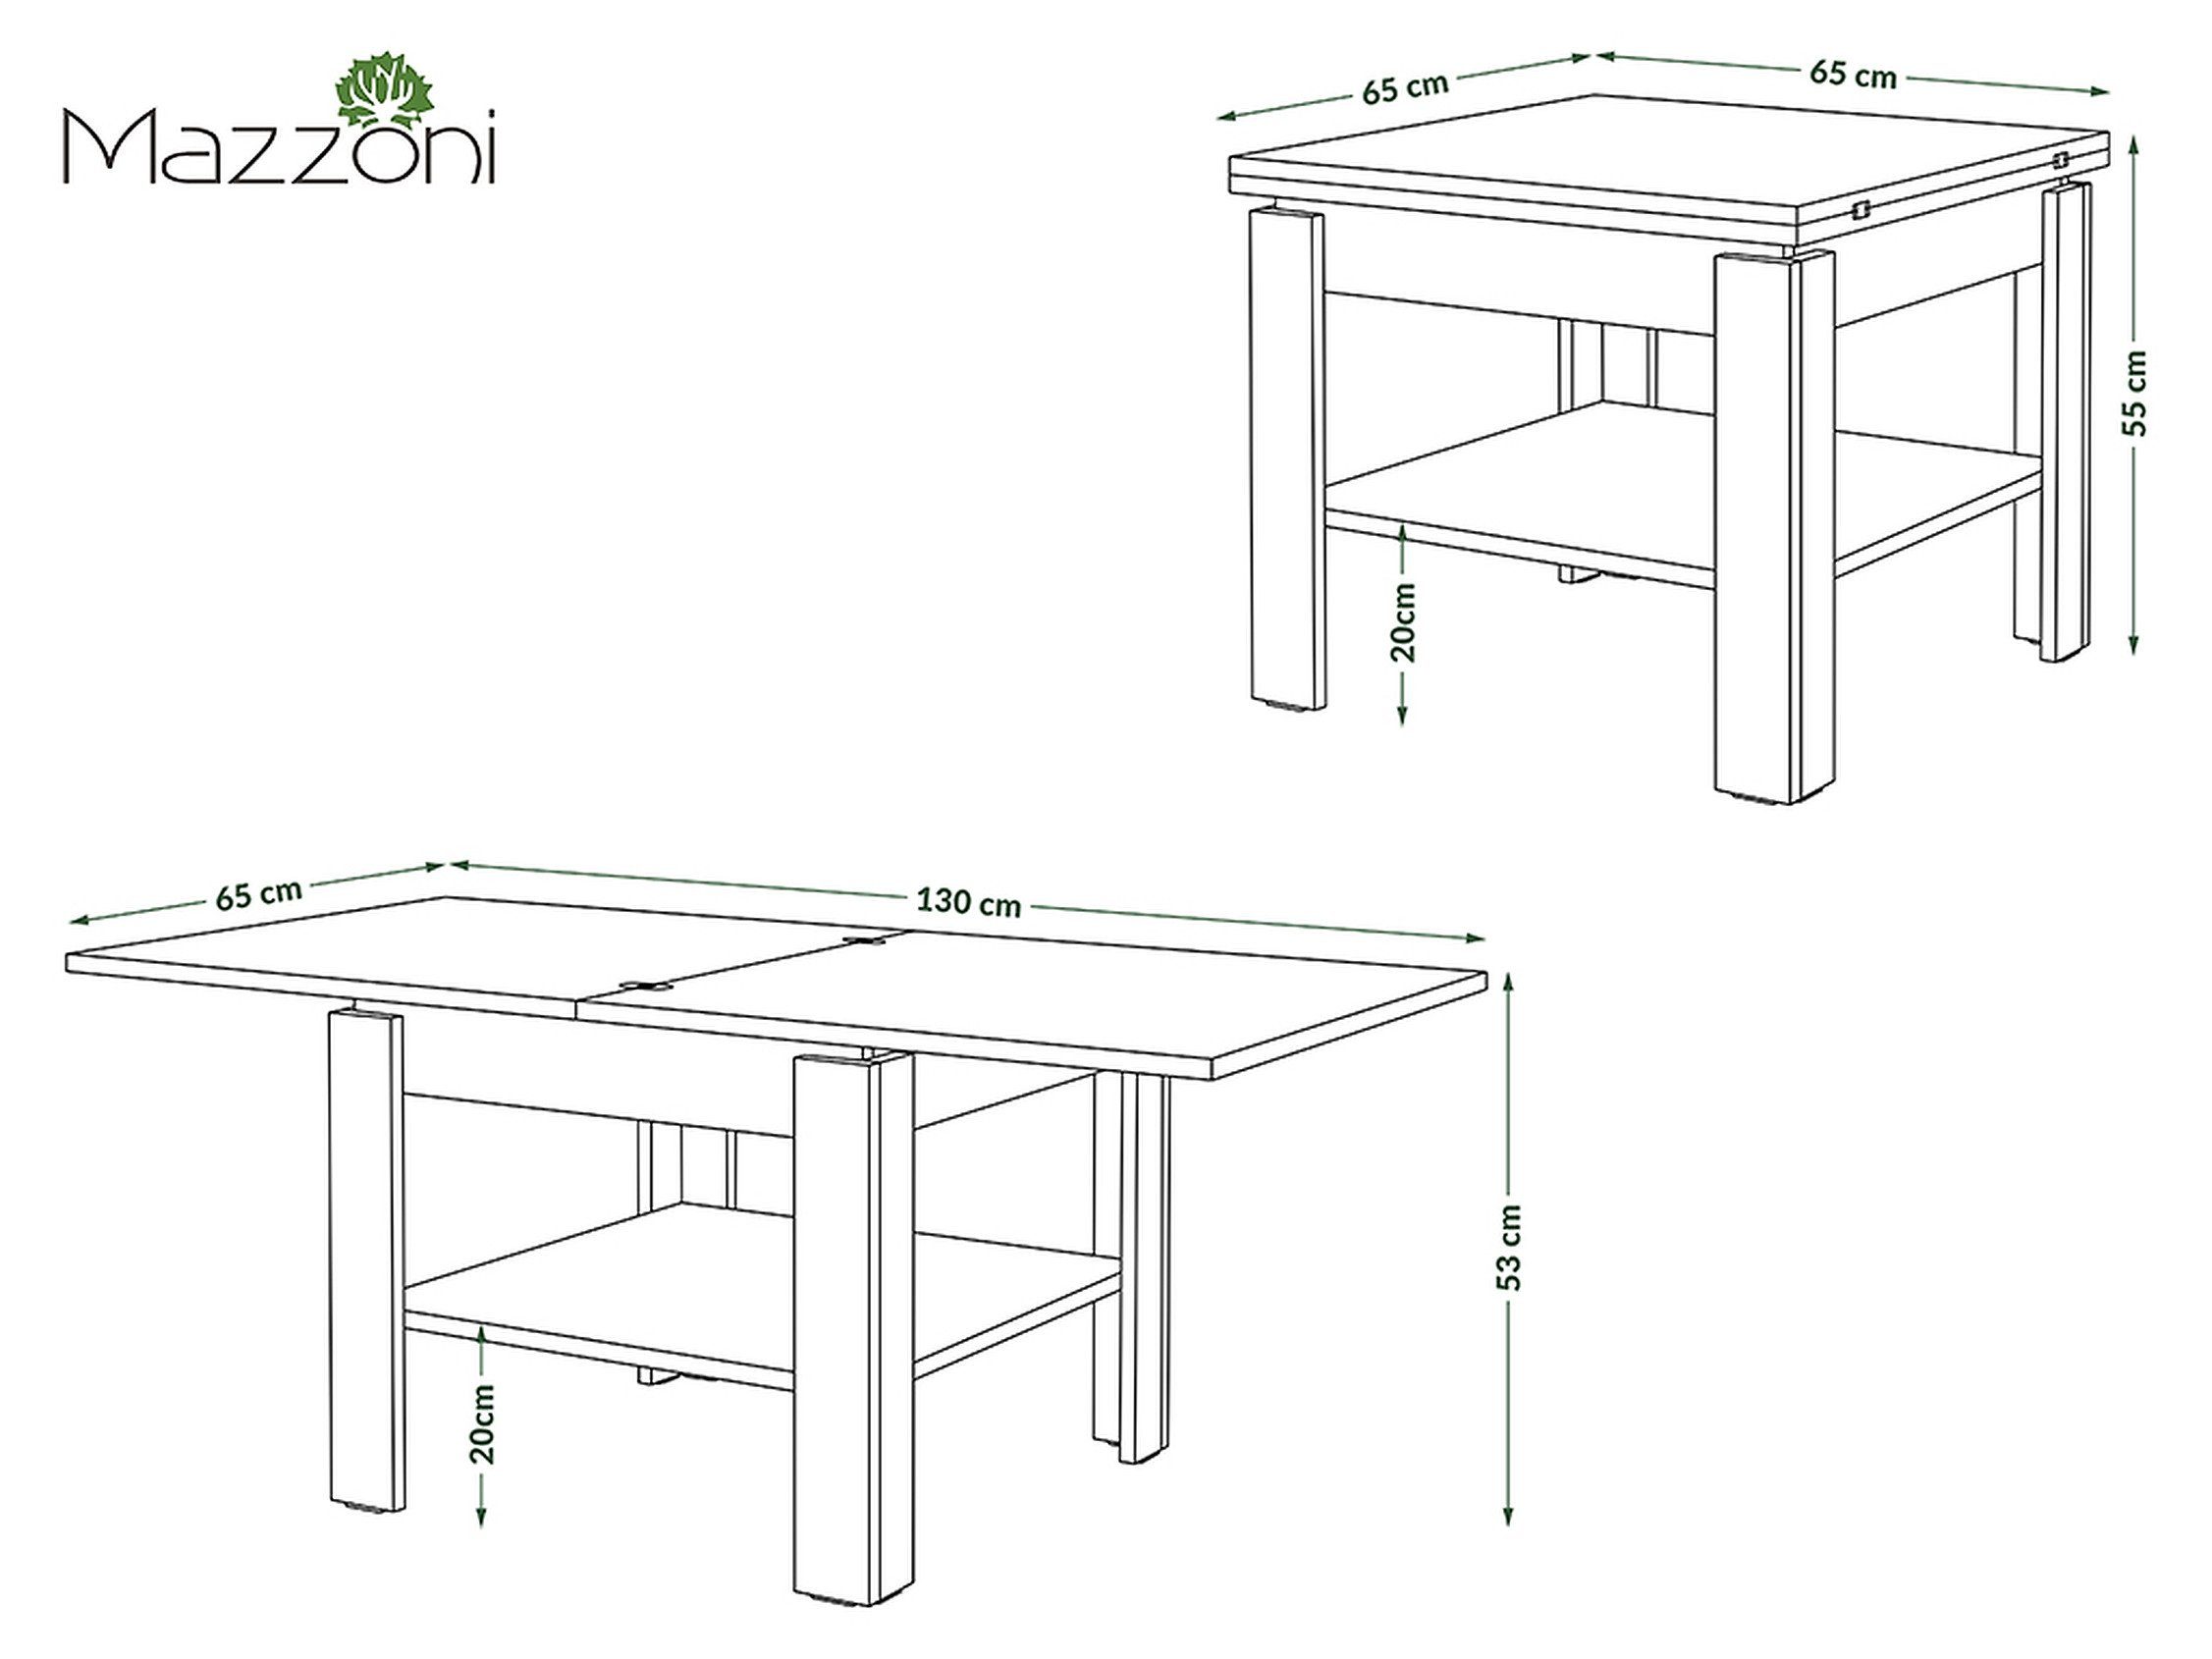 - Eiche Weiß Eiche Tisch matt aufklappbar Sonoma Weiß Leo 130cm / - matt Couchtisch 65 Design Sonoma Mazzoni